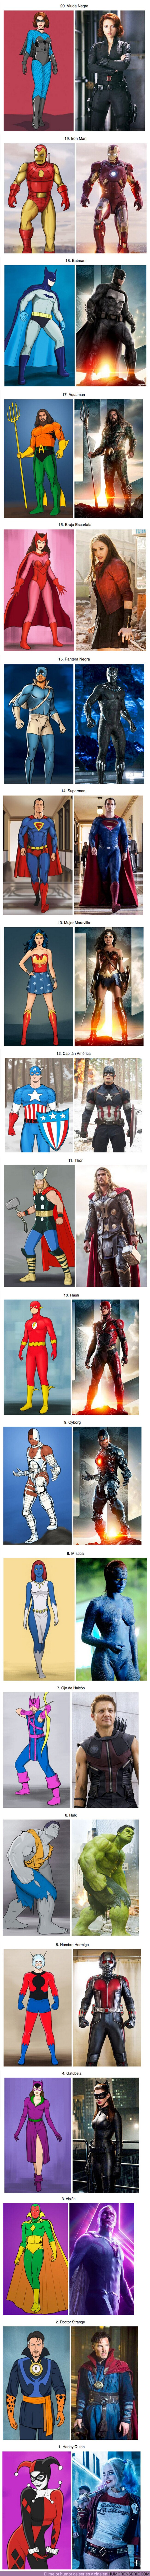 59529 - GALERÍA: Cómo se verían los personajes de las películas de Marvel y DC si sus trajes hubieran sido creados en base a los primeros números de sus cómics